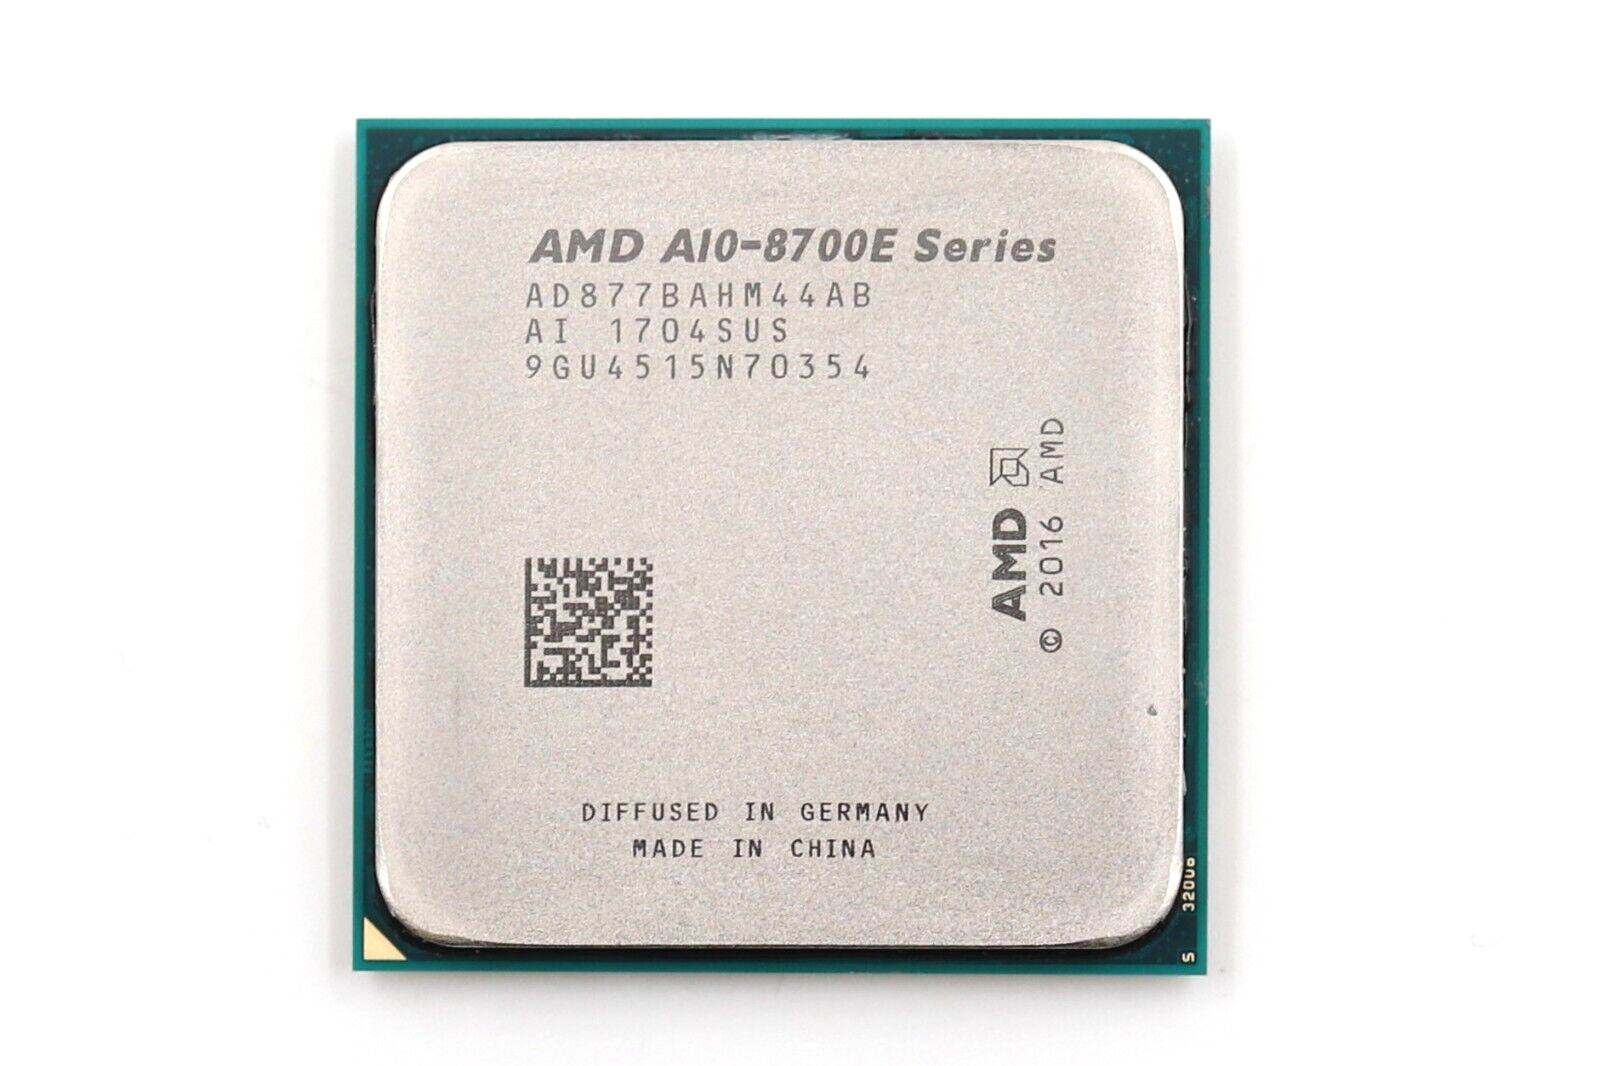 AMD A10-Series A10-8700E 2.80GHz Quad-Core Socket AM4 CPU P/N: AD877BAHM44AB